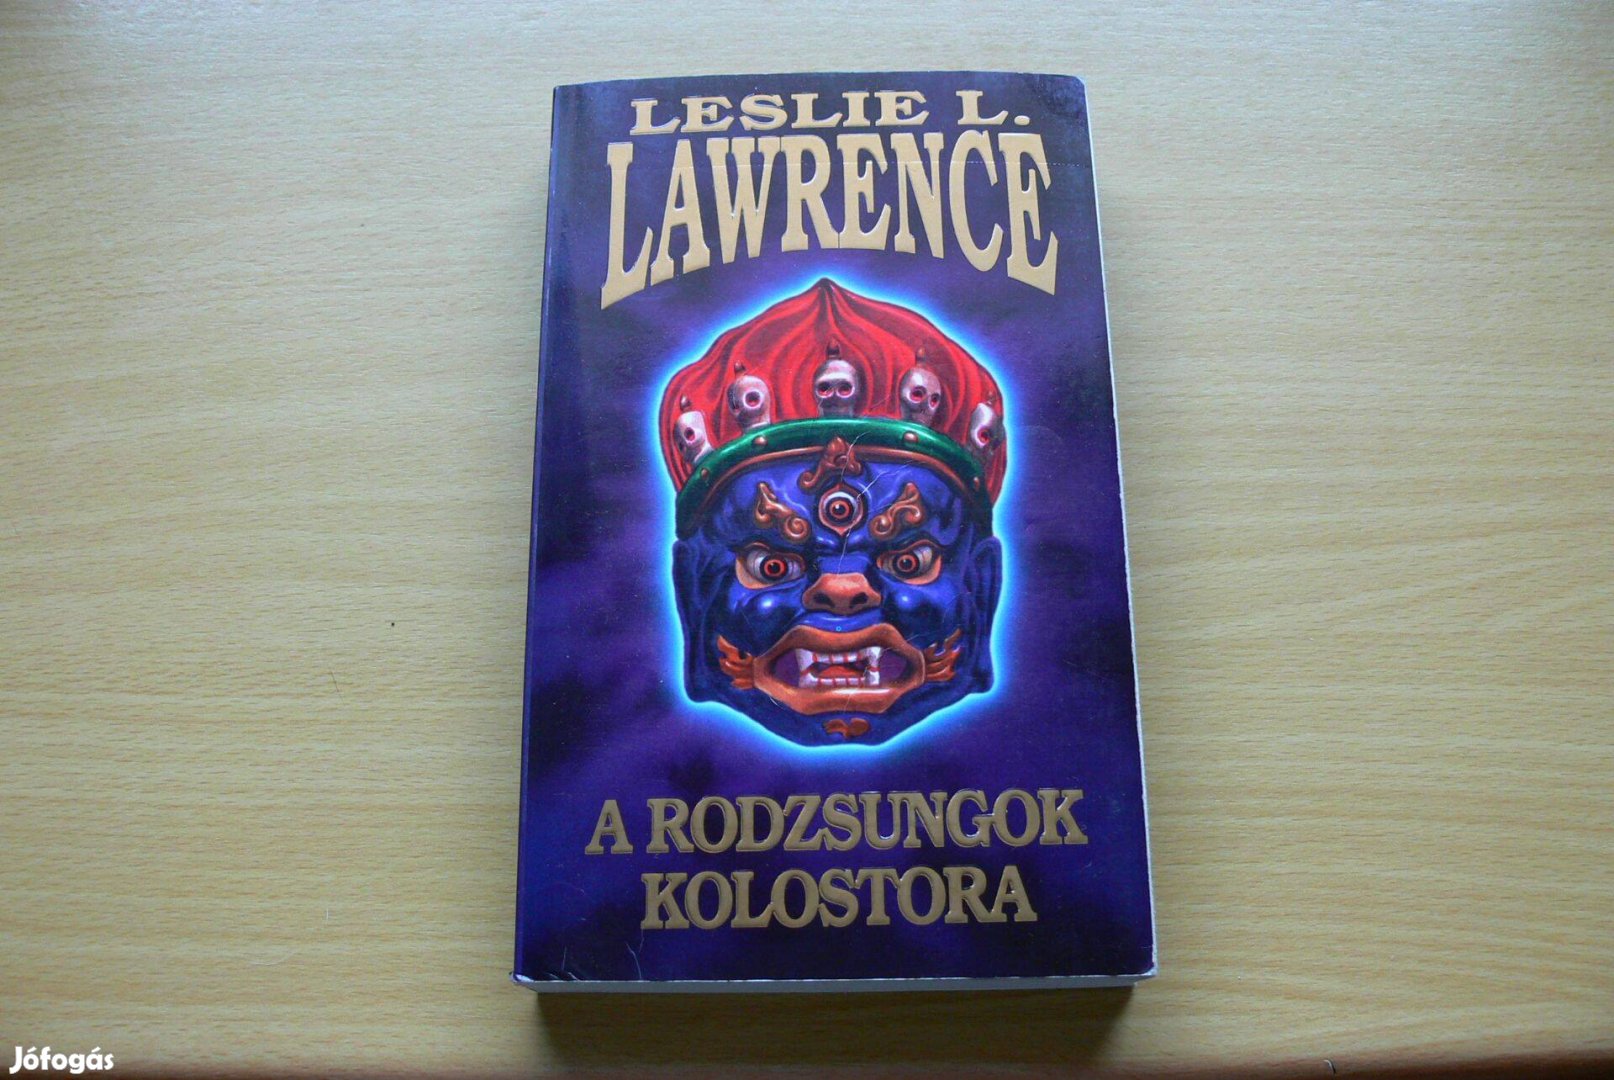 Leslie L. Lawrence: A rodzsungok kolostora